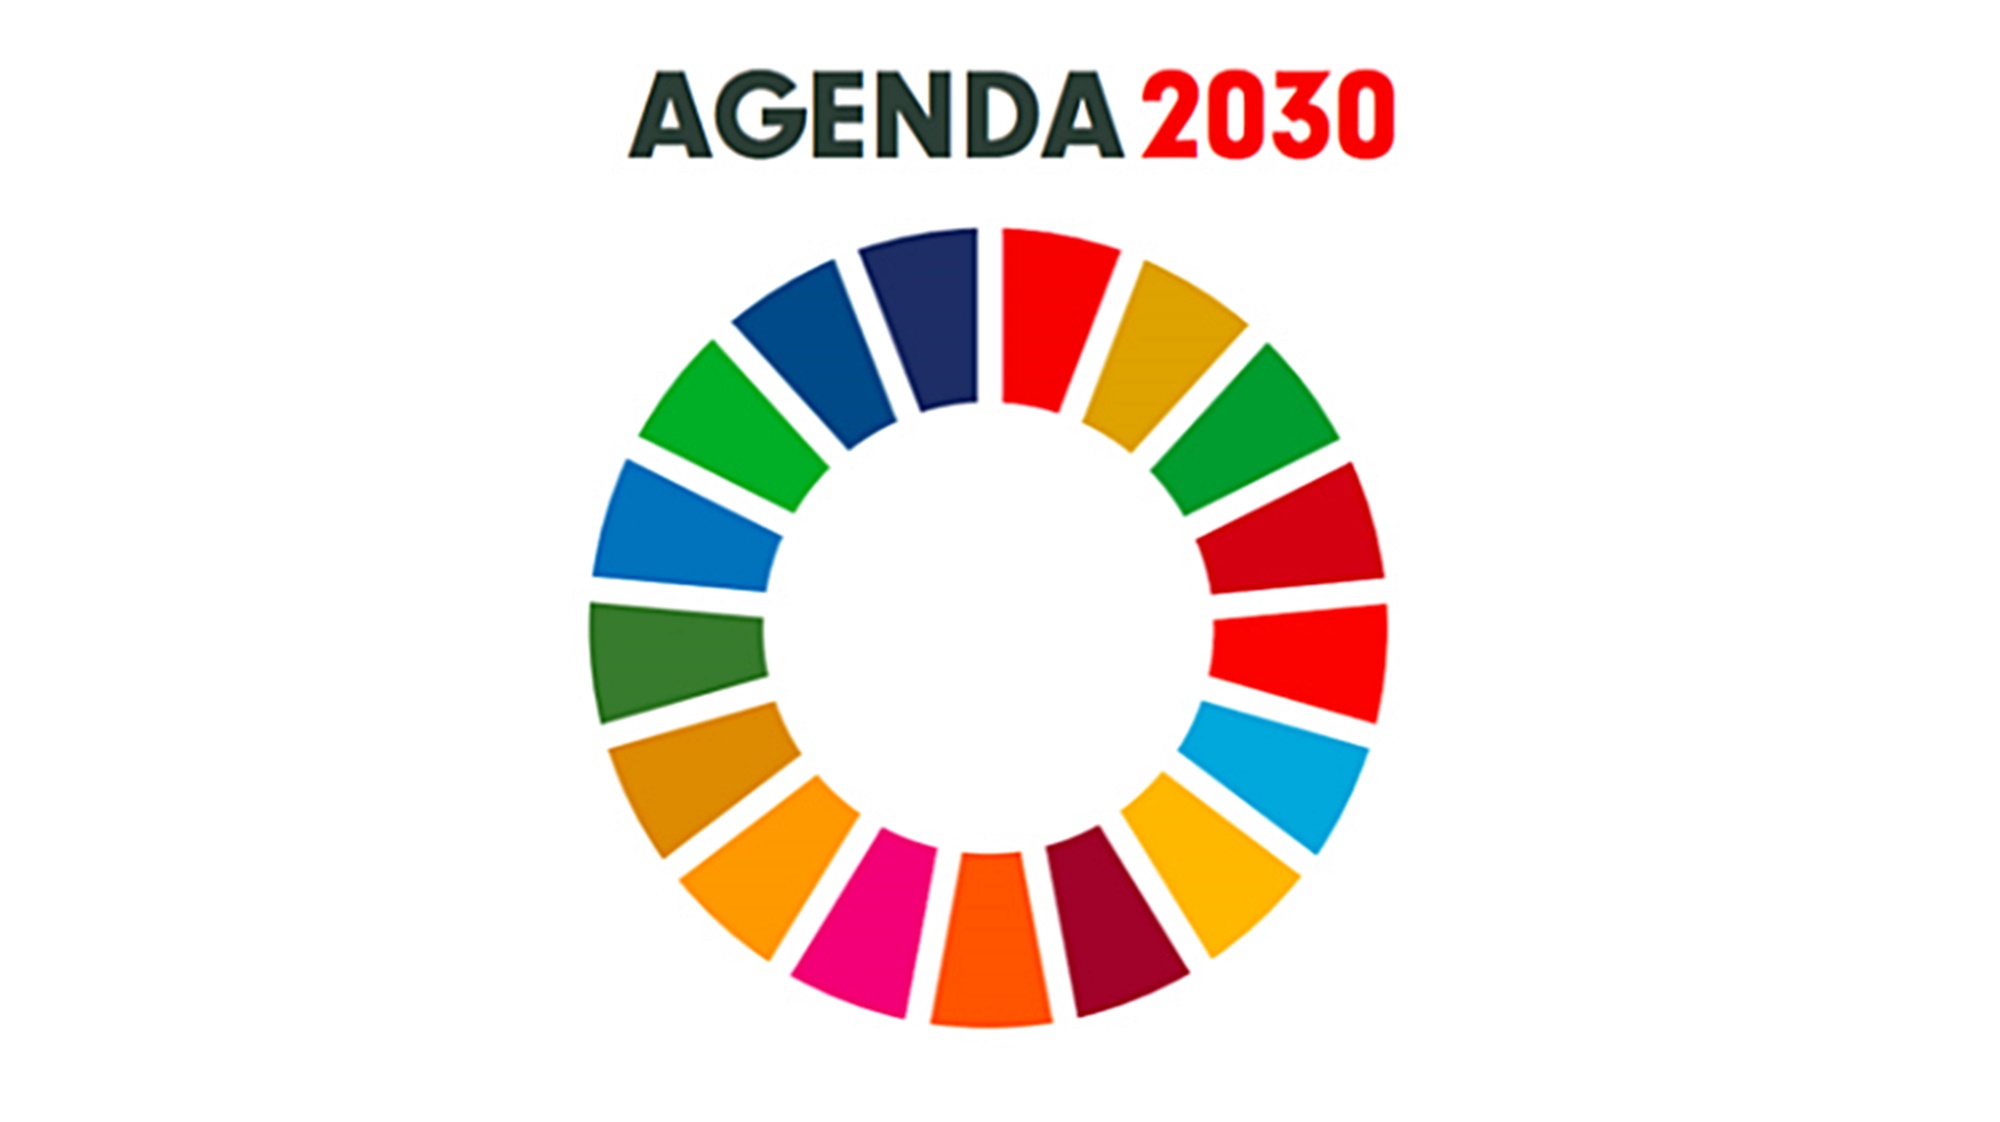 La agenda 2030 es RURAL